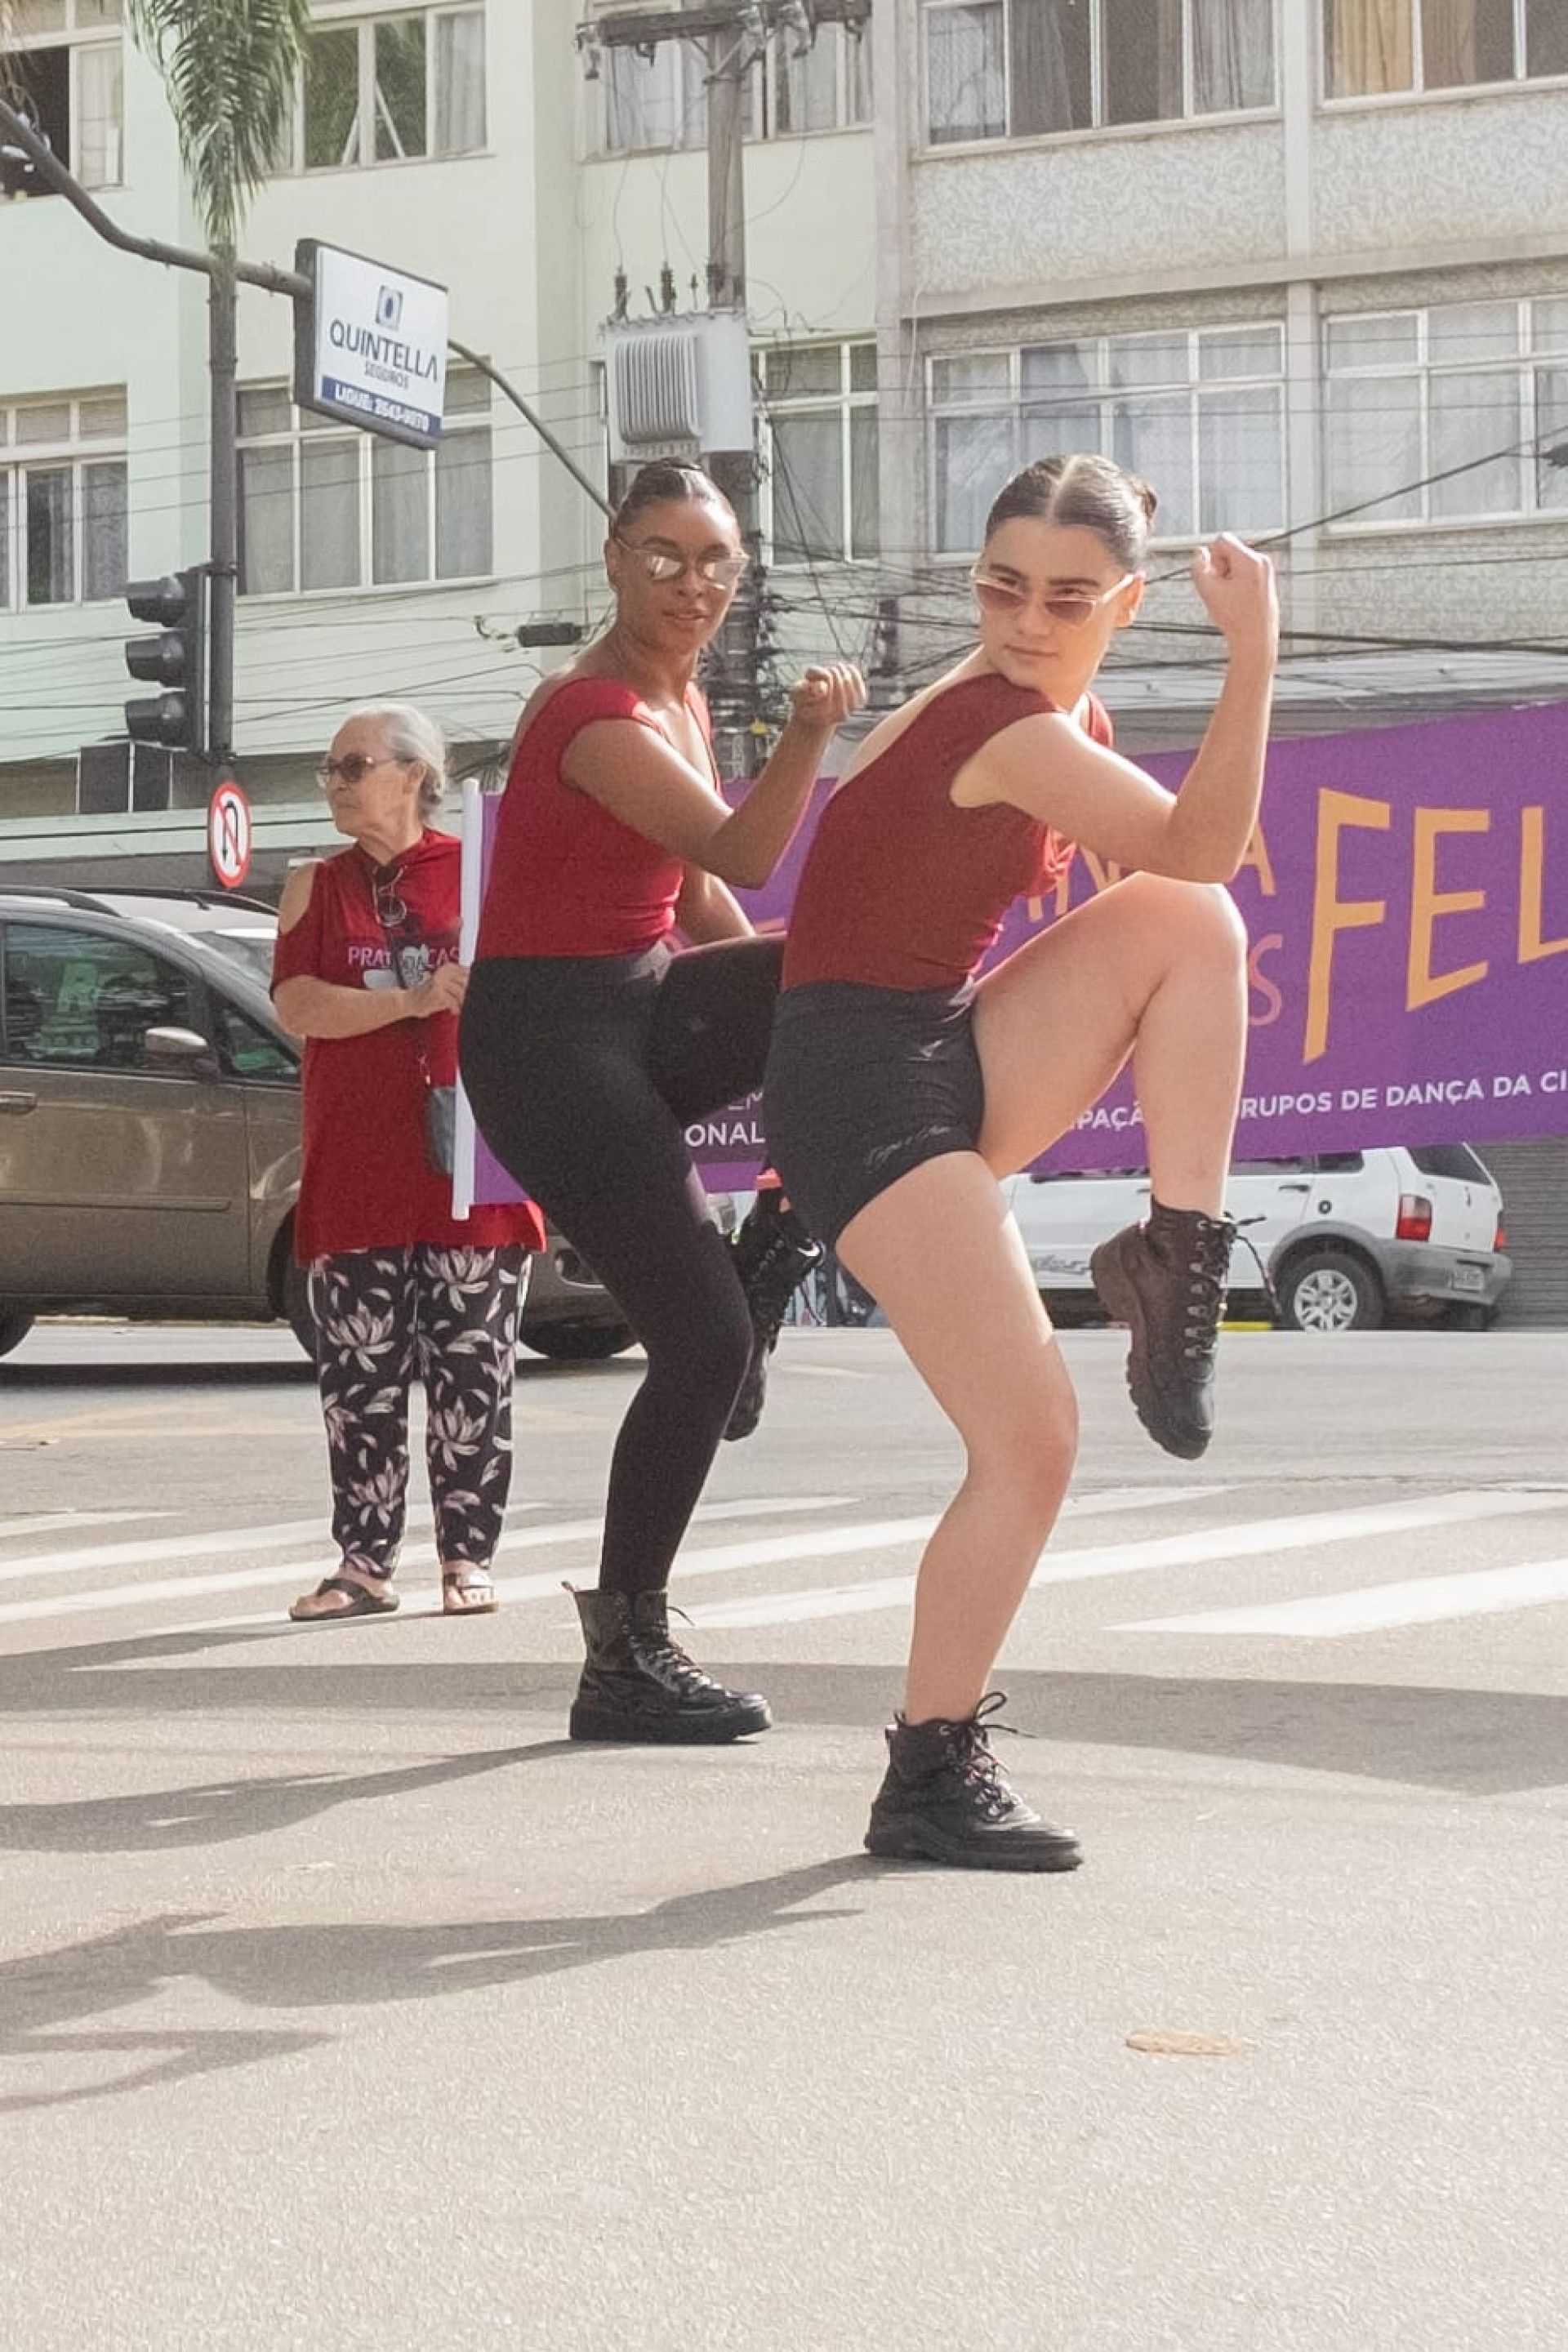 Dia Internacional da Dança será comemorado com intervenção artística e aula pública de dança em Teresópolis - Divulgação